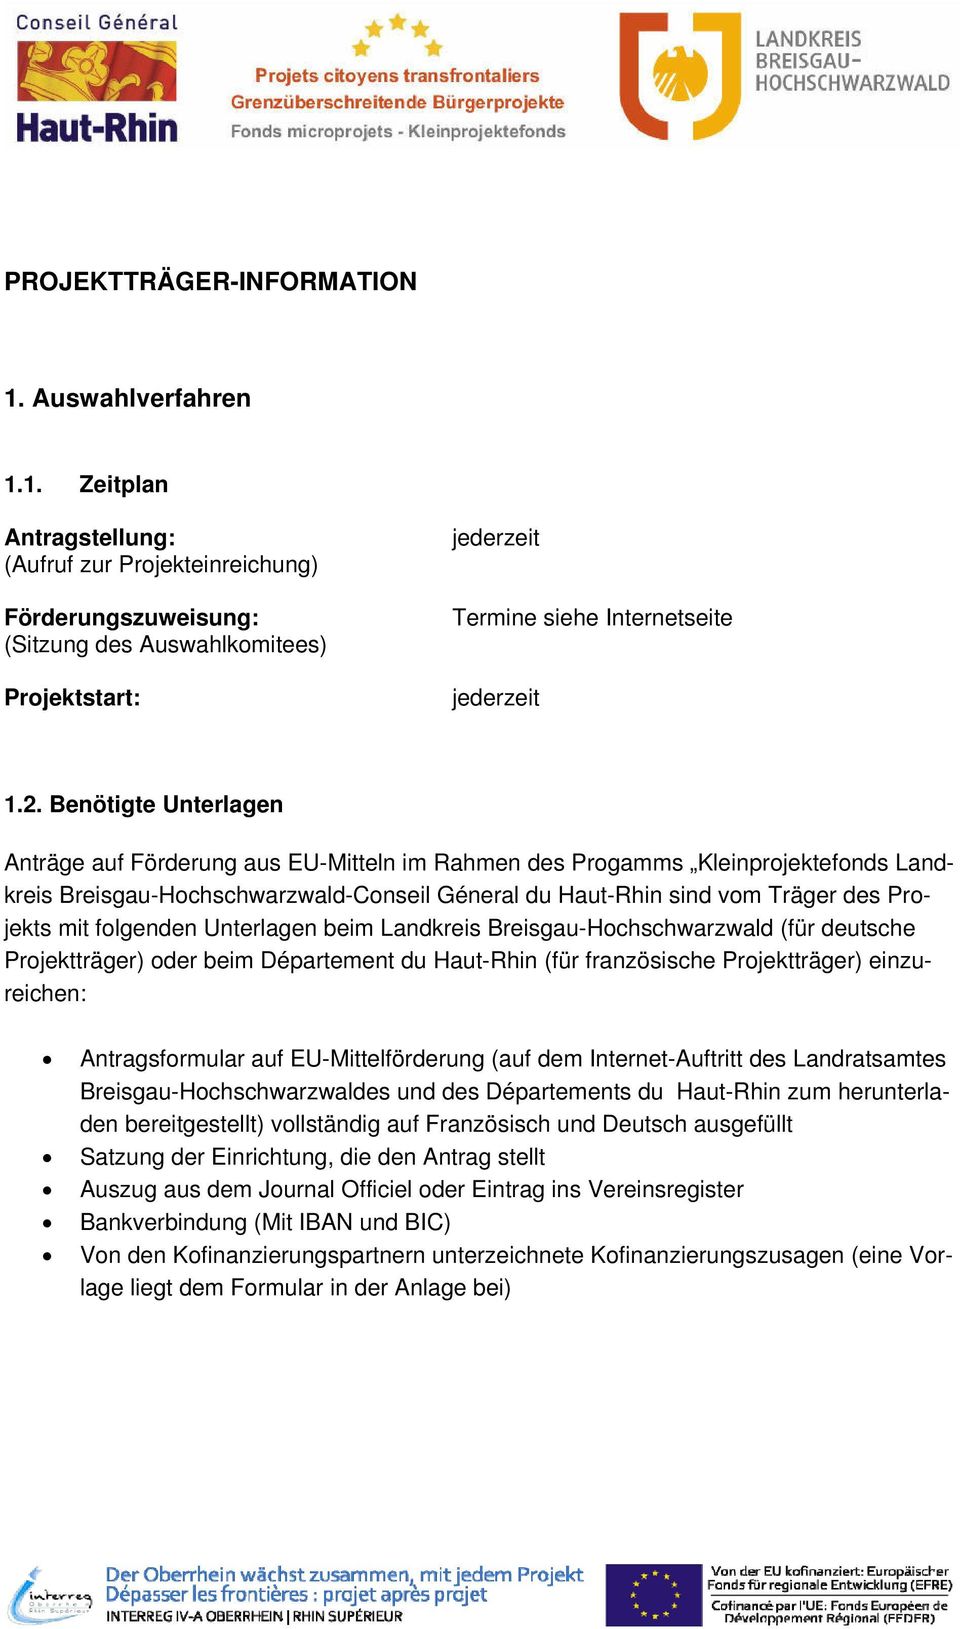 Benötigte Unterlagen Anträge auf Förderung aus EU-Mitteln im Rahmen des Progamms Kleinprojektefonds Landkreis Breisgau-Hochschwarzwald-Conseil Géneral du Haut-Rhin sind vom Träger des Projekts mit